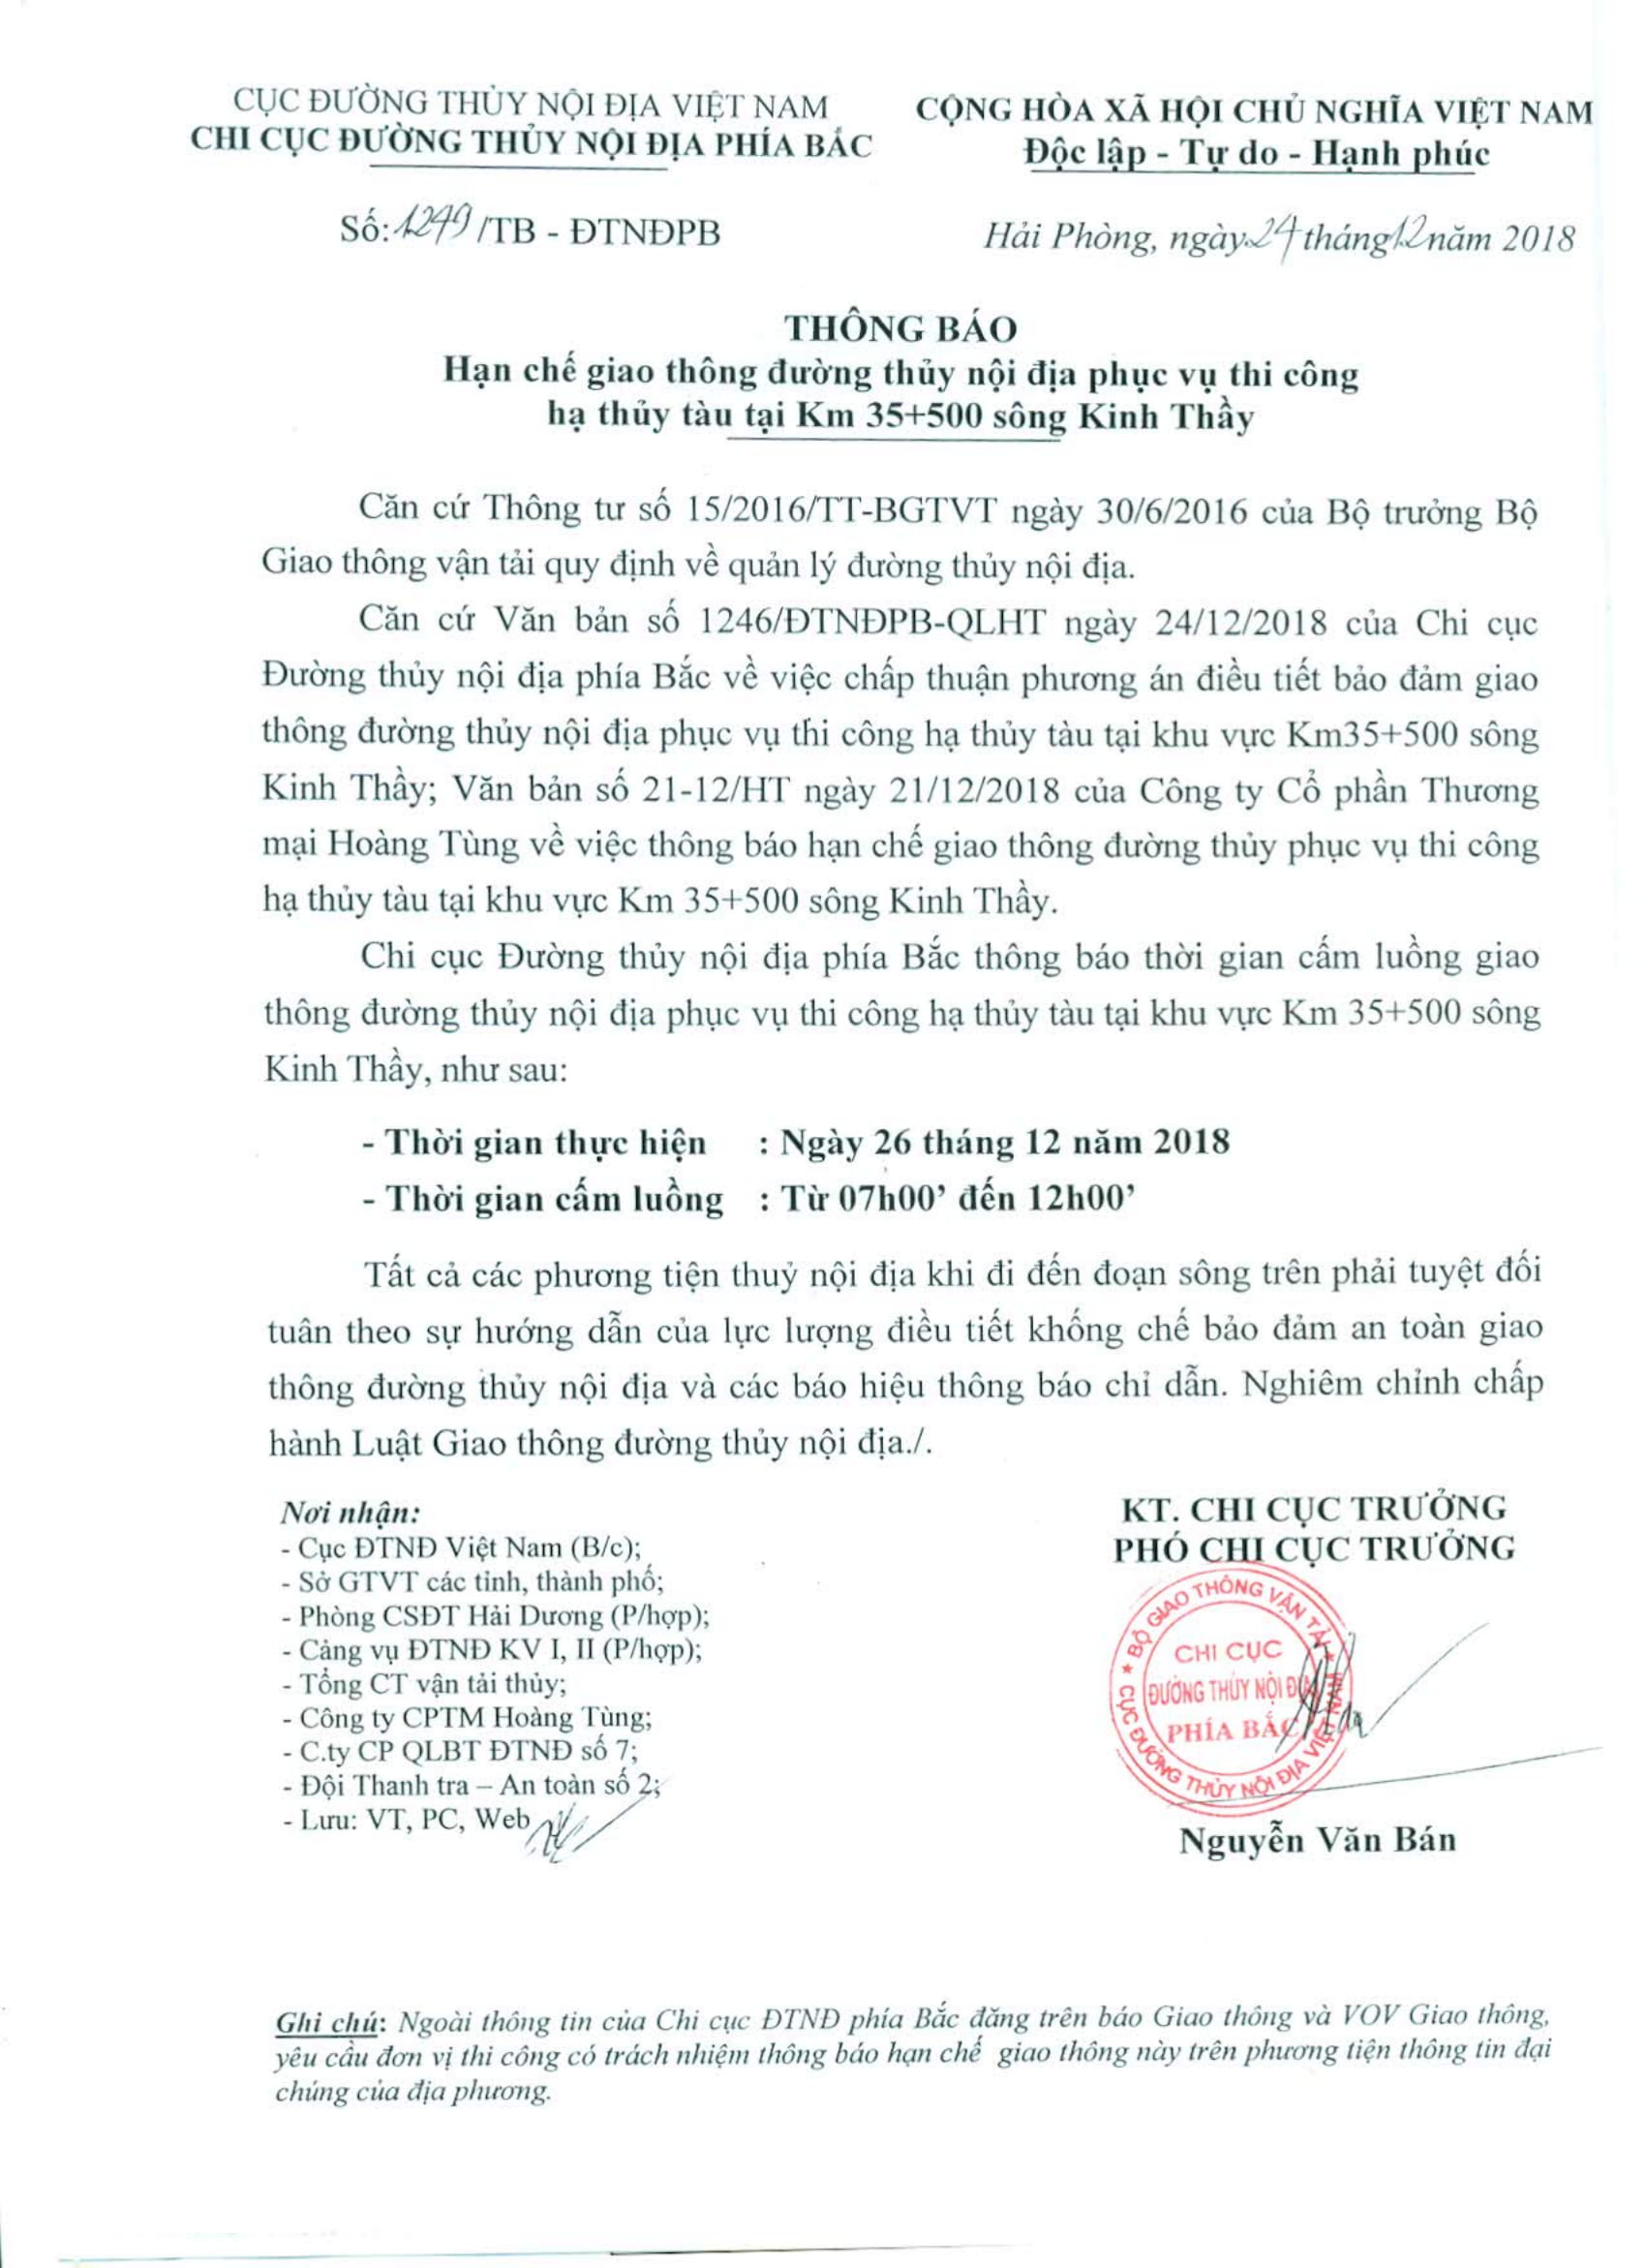 Thông báo HCGT ĐTNĐ phục vụ hạ thủy tàu qua sông Kinh Thầy